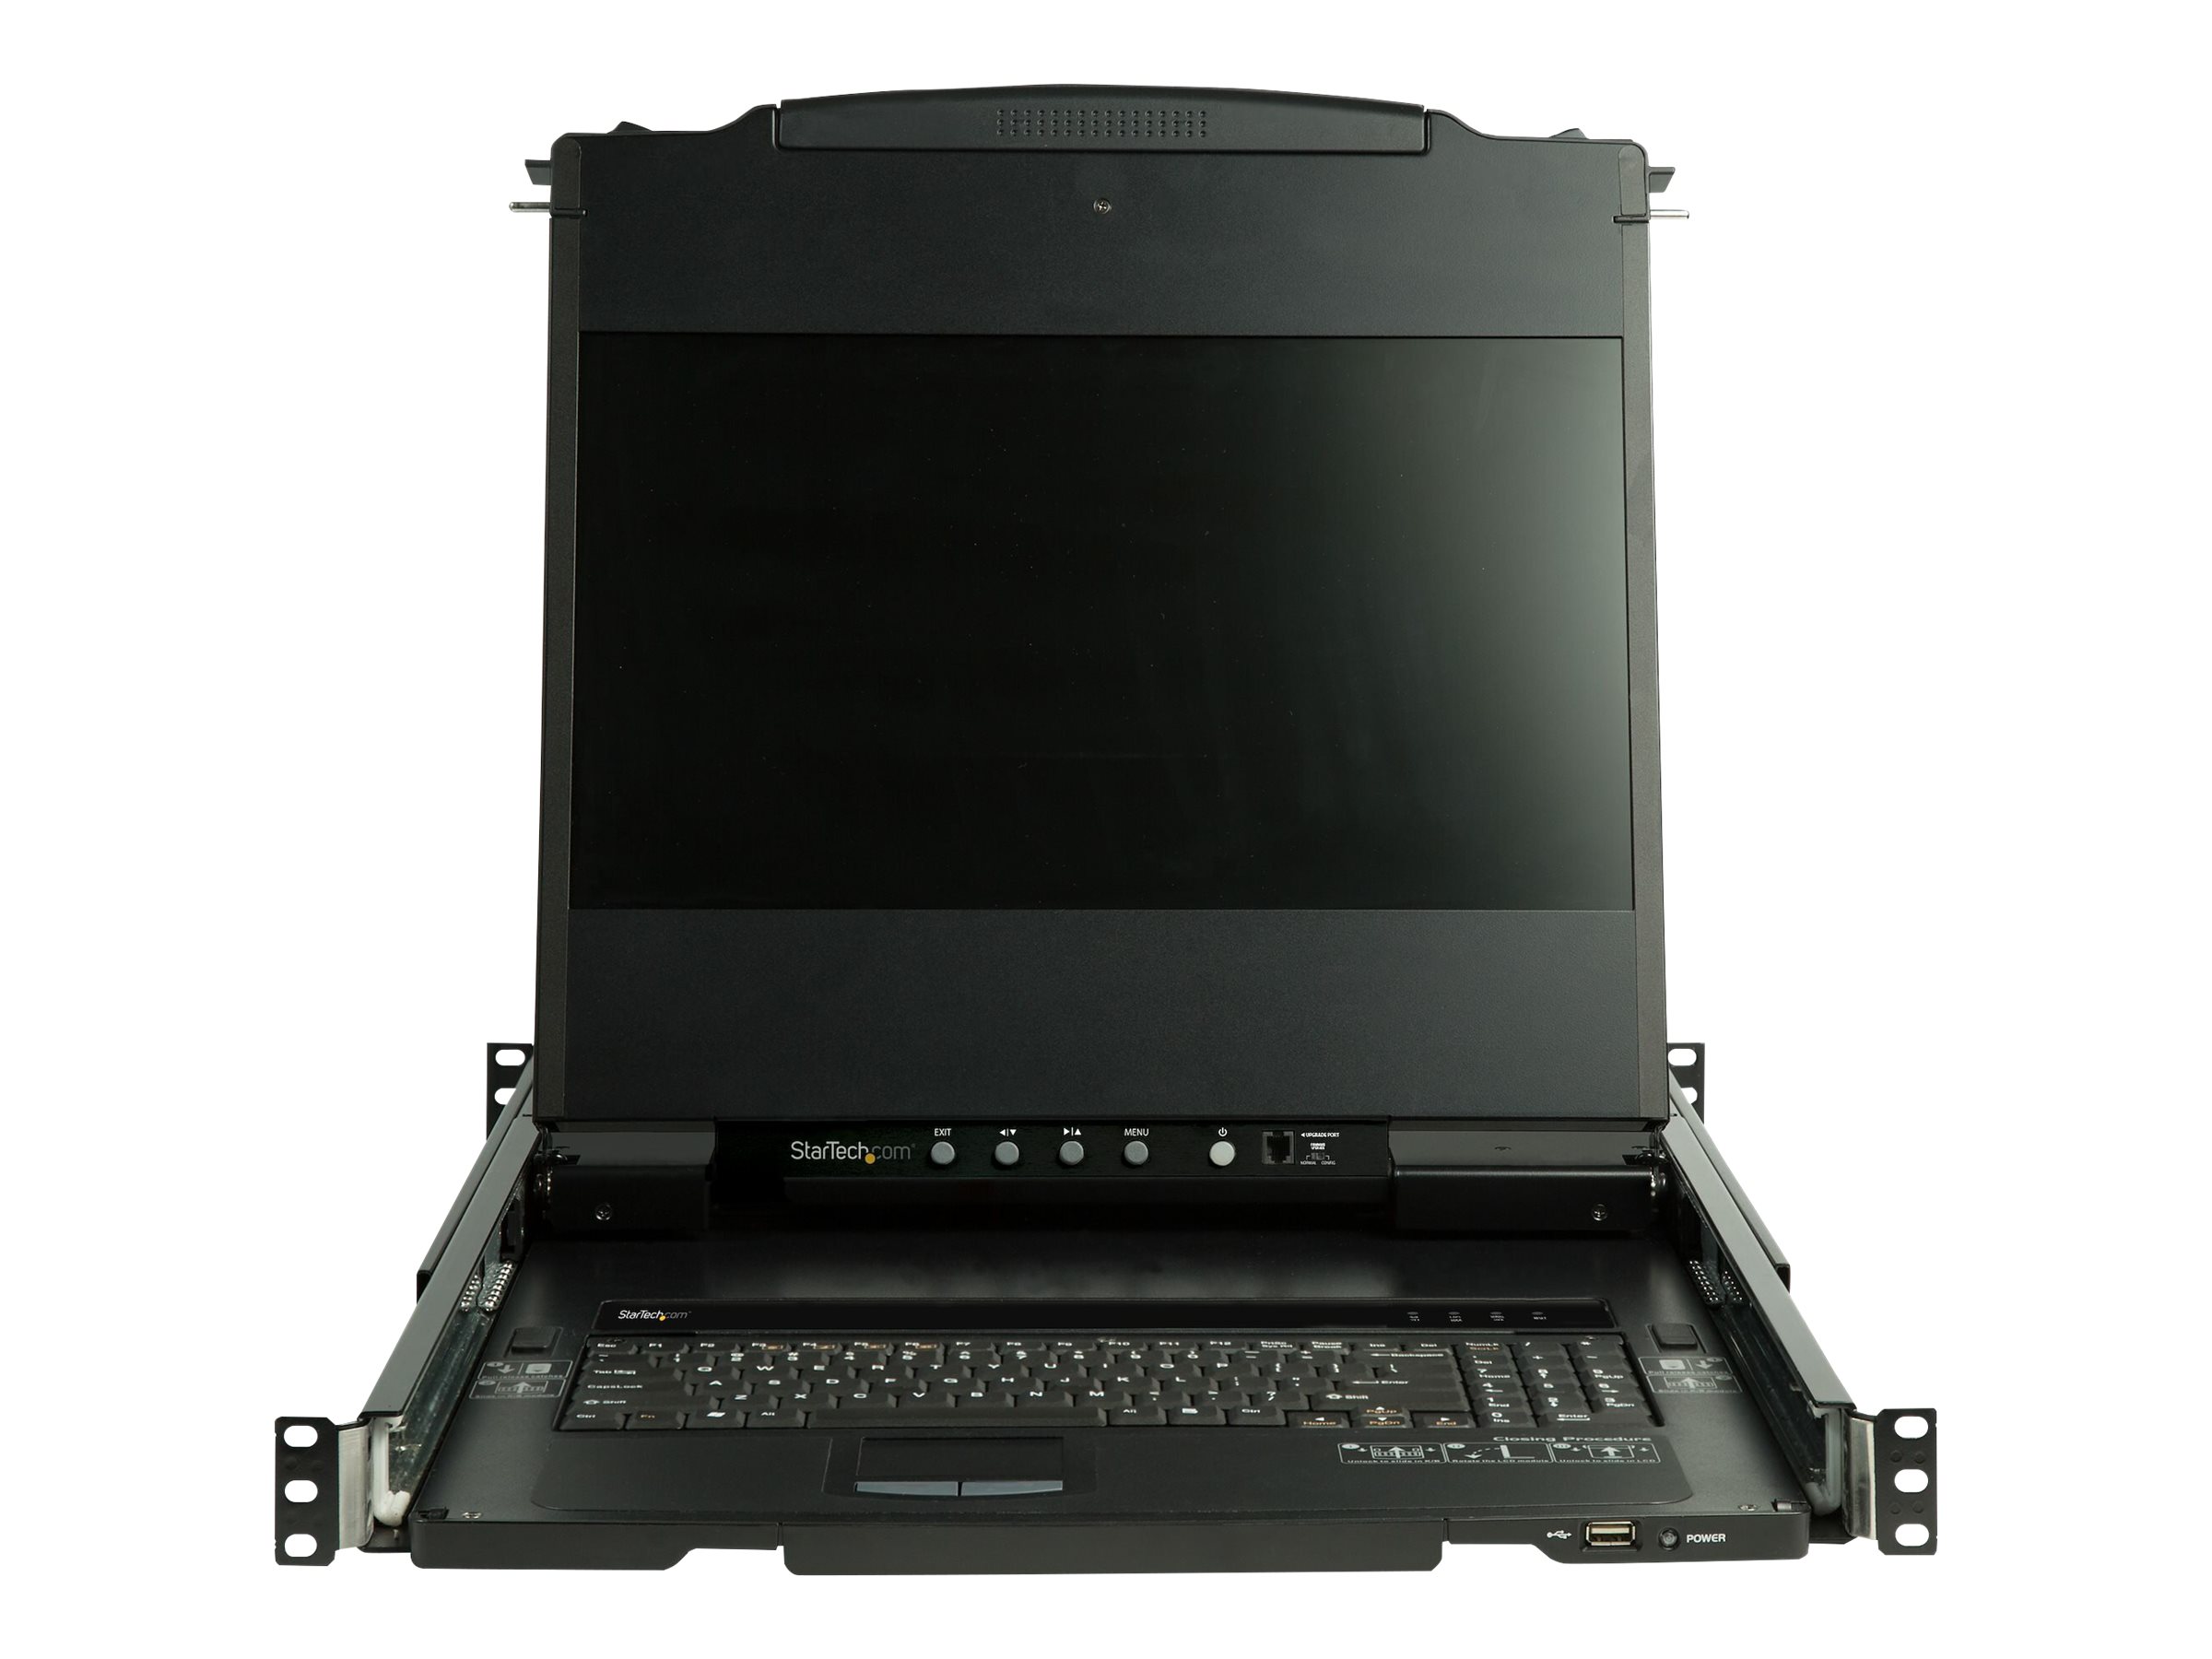 StarTech.com Rack KVM Konsole HD 1080p - US Tastatur(QWERTY), Ein Port DVI/VGA KVM mit 17" LCD Monitor - 1HE LCD KVM Konsolenschublade mit Kabeln - USB Unterstützung - 44.230 MTBF (RKCOND17HD)